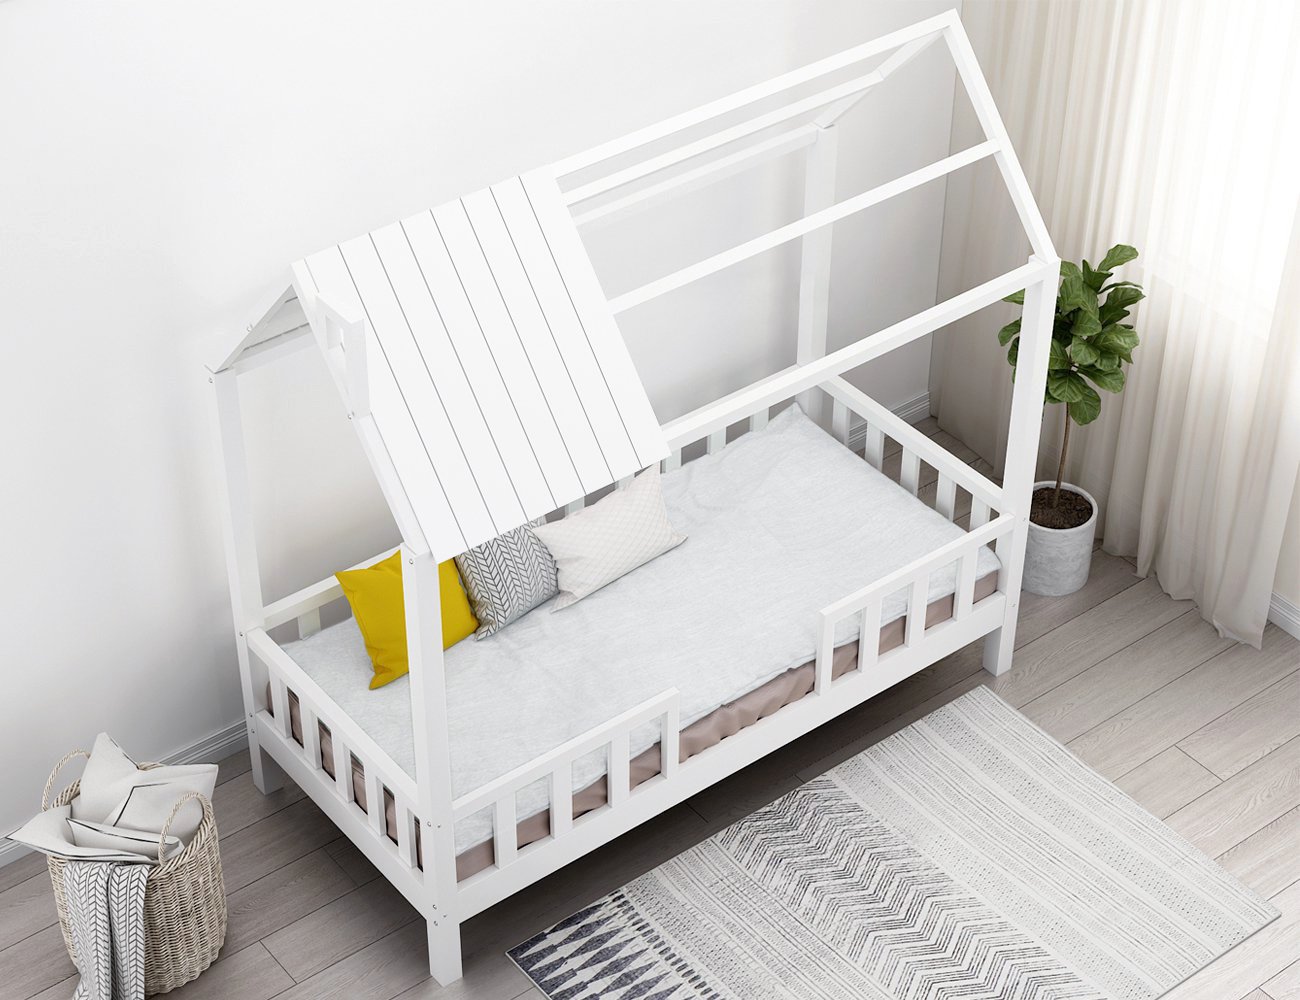 Kids King Single Bed Frame + Mattress Set - Noa @ Crazy Sales - We have